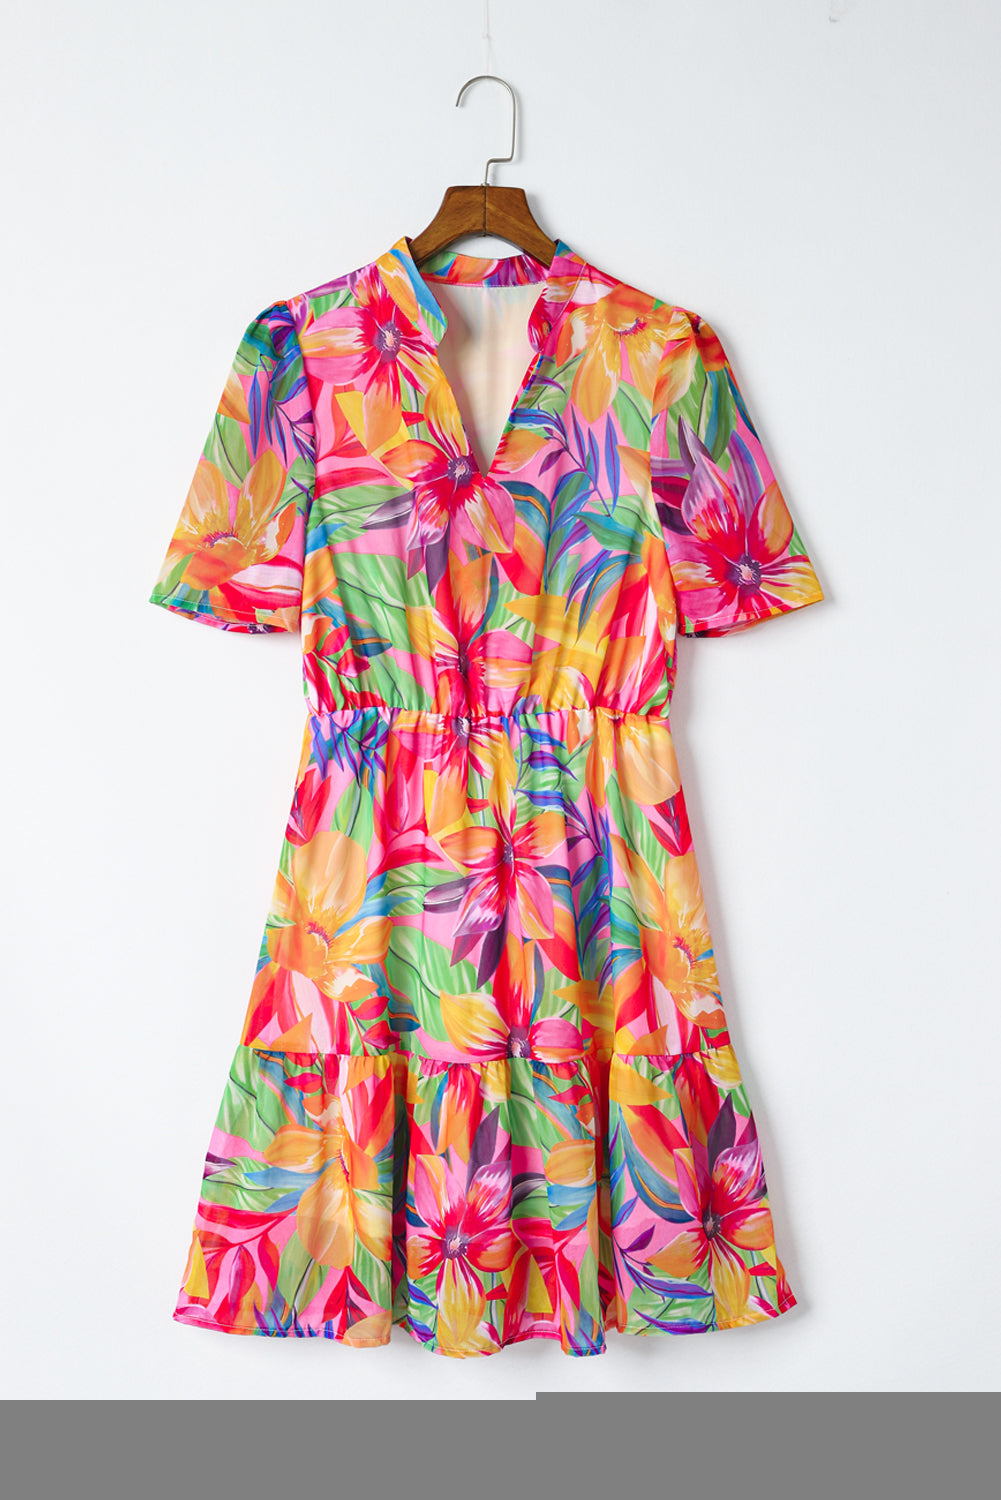 Multicolor Summer Floral Print V Neck Short Sleeve Dress